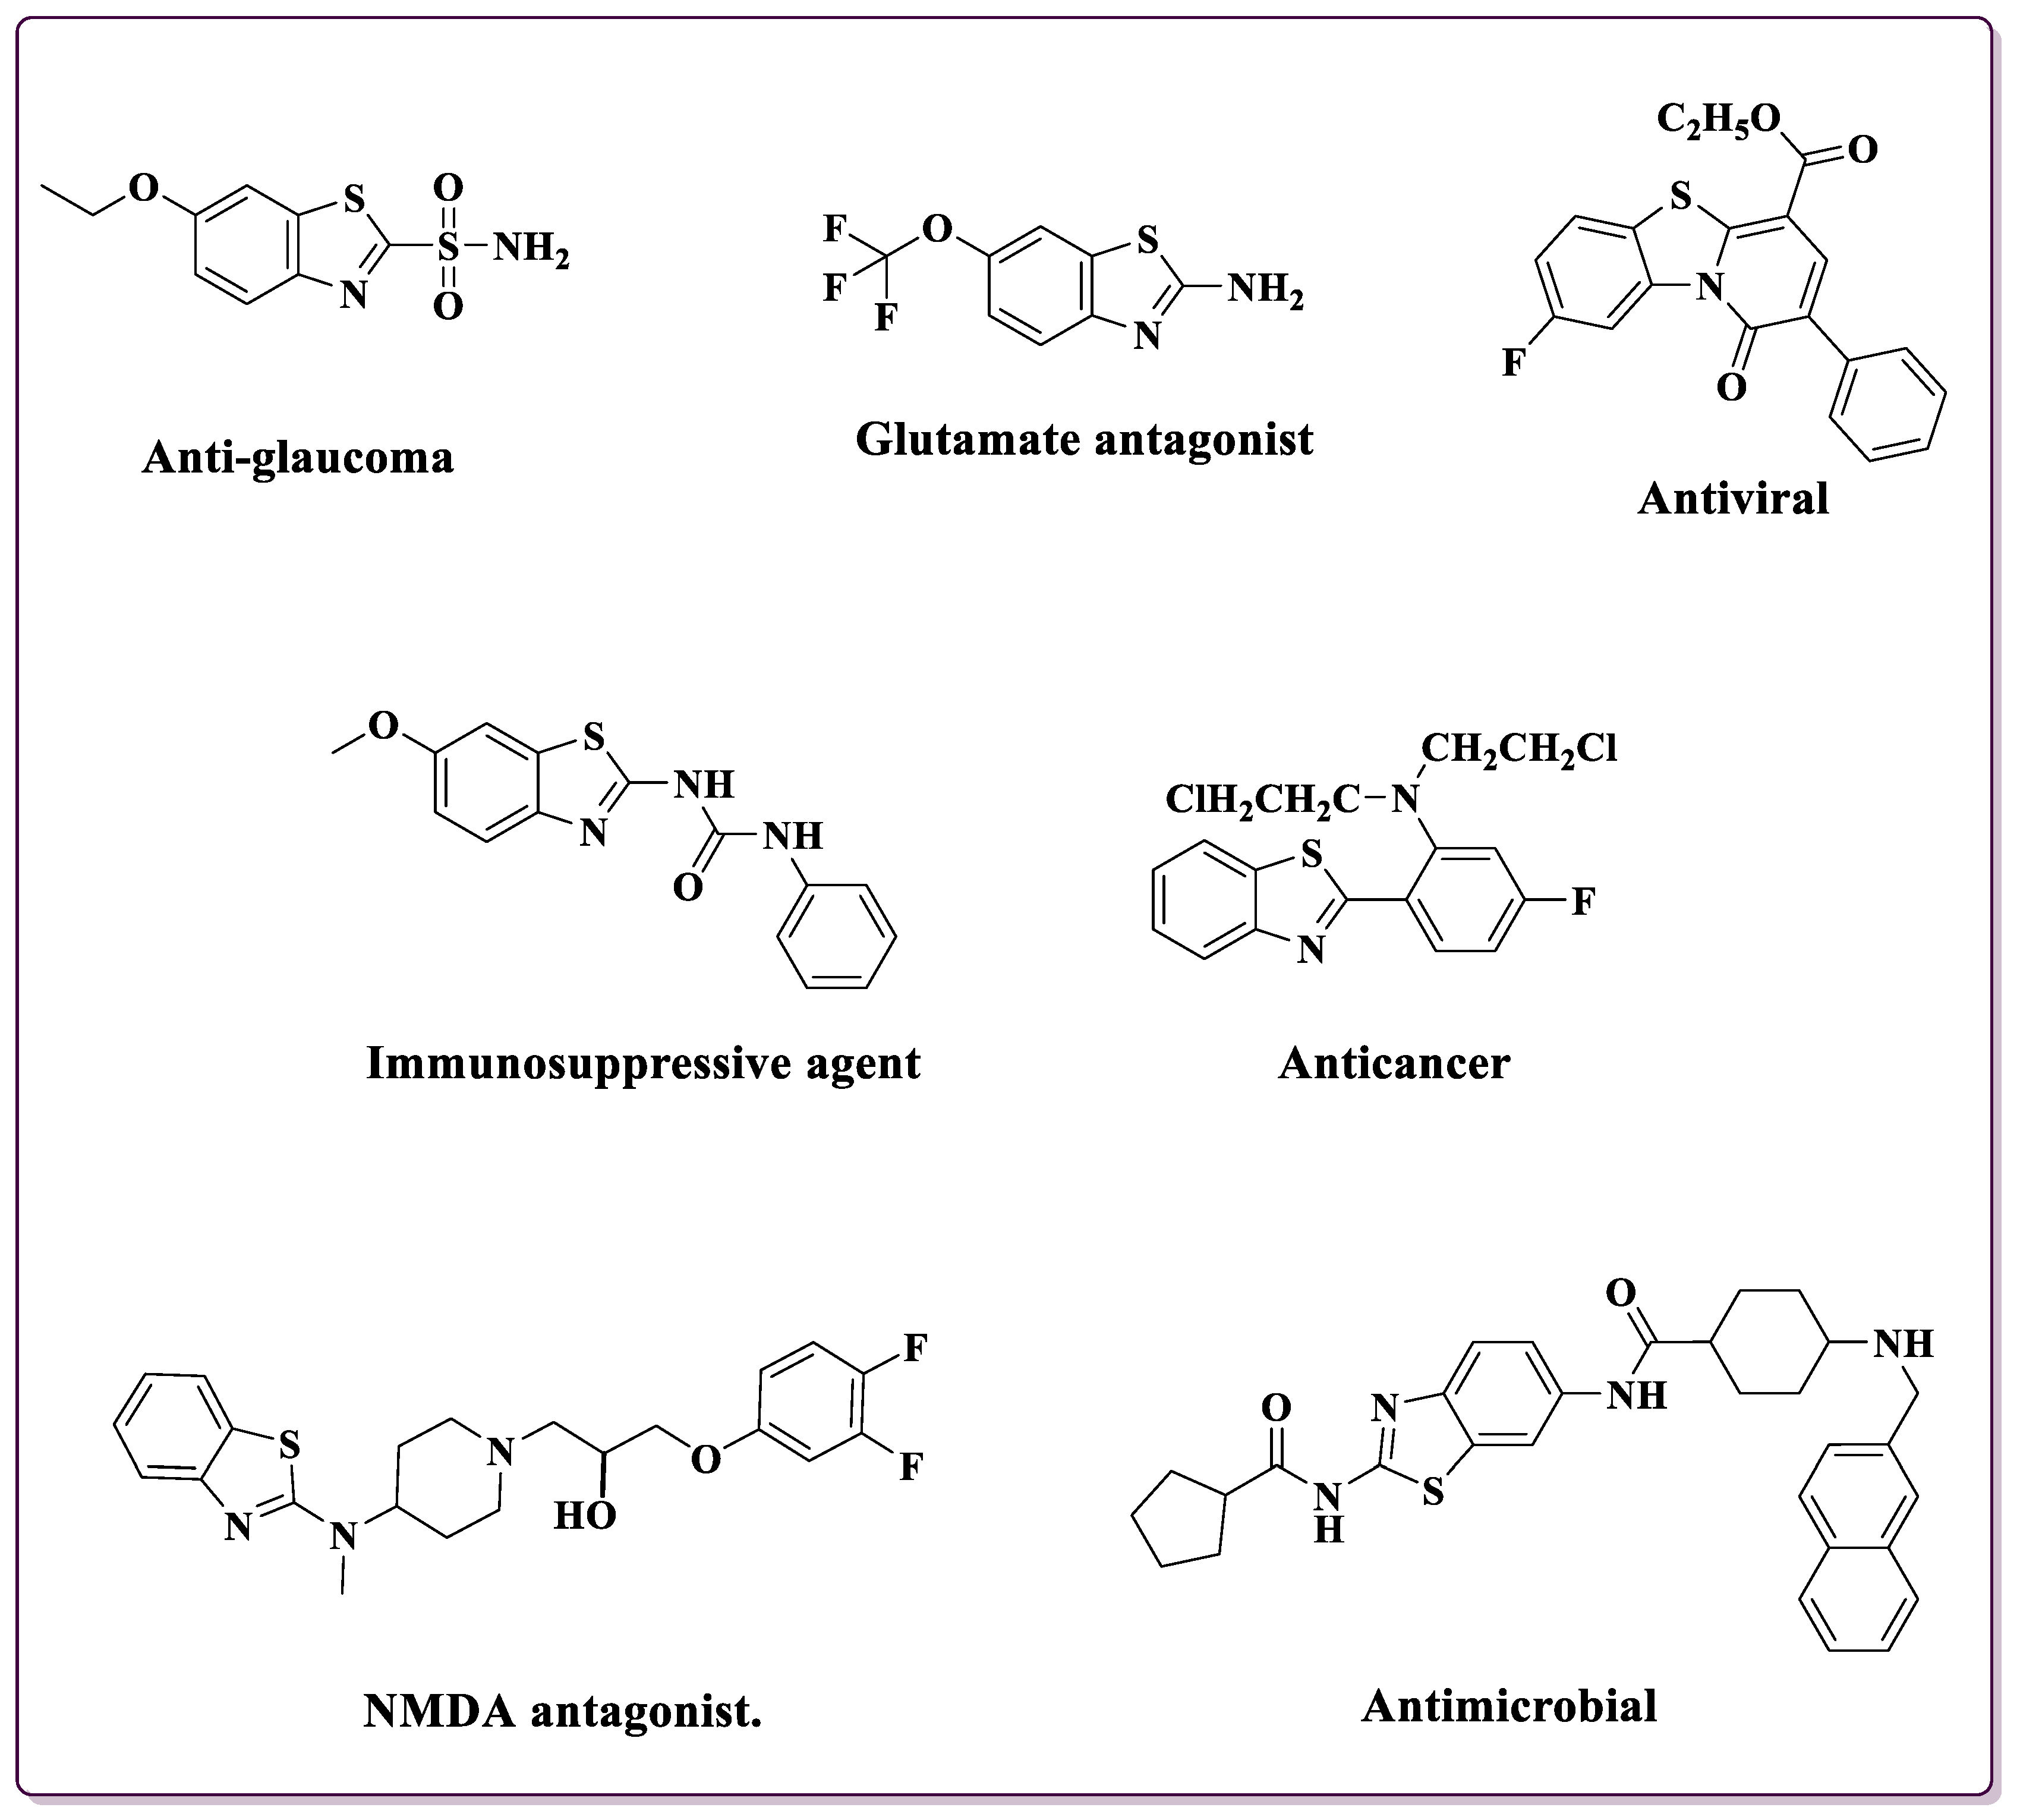 2,4,6-tris[bis(trimethylsilyl)methyl]phenyl]antimony